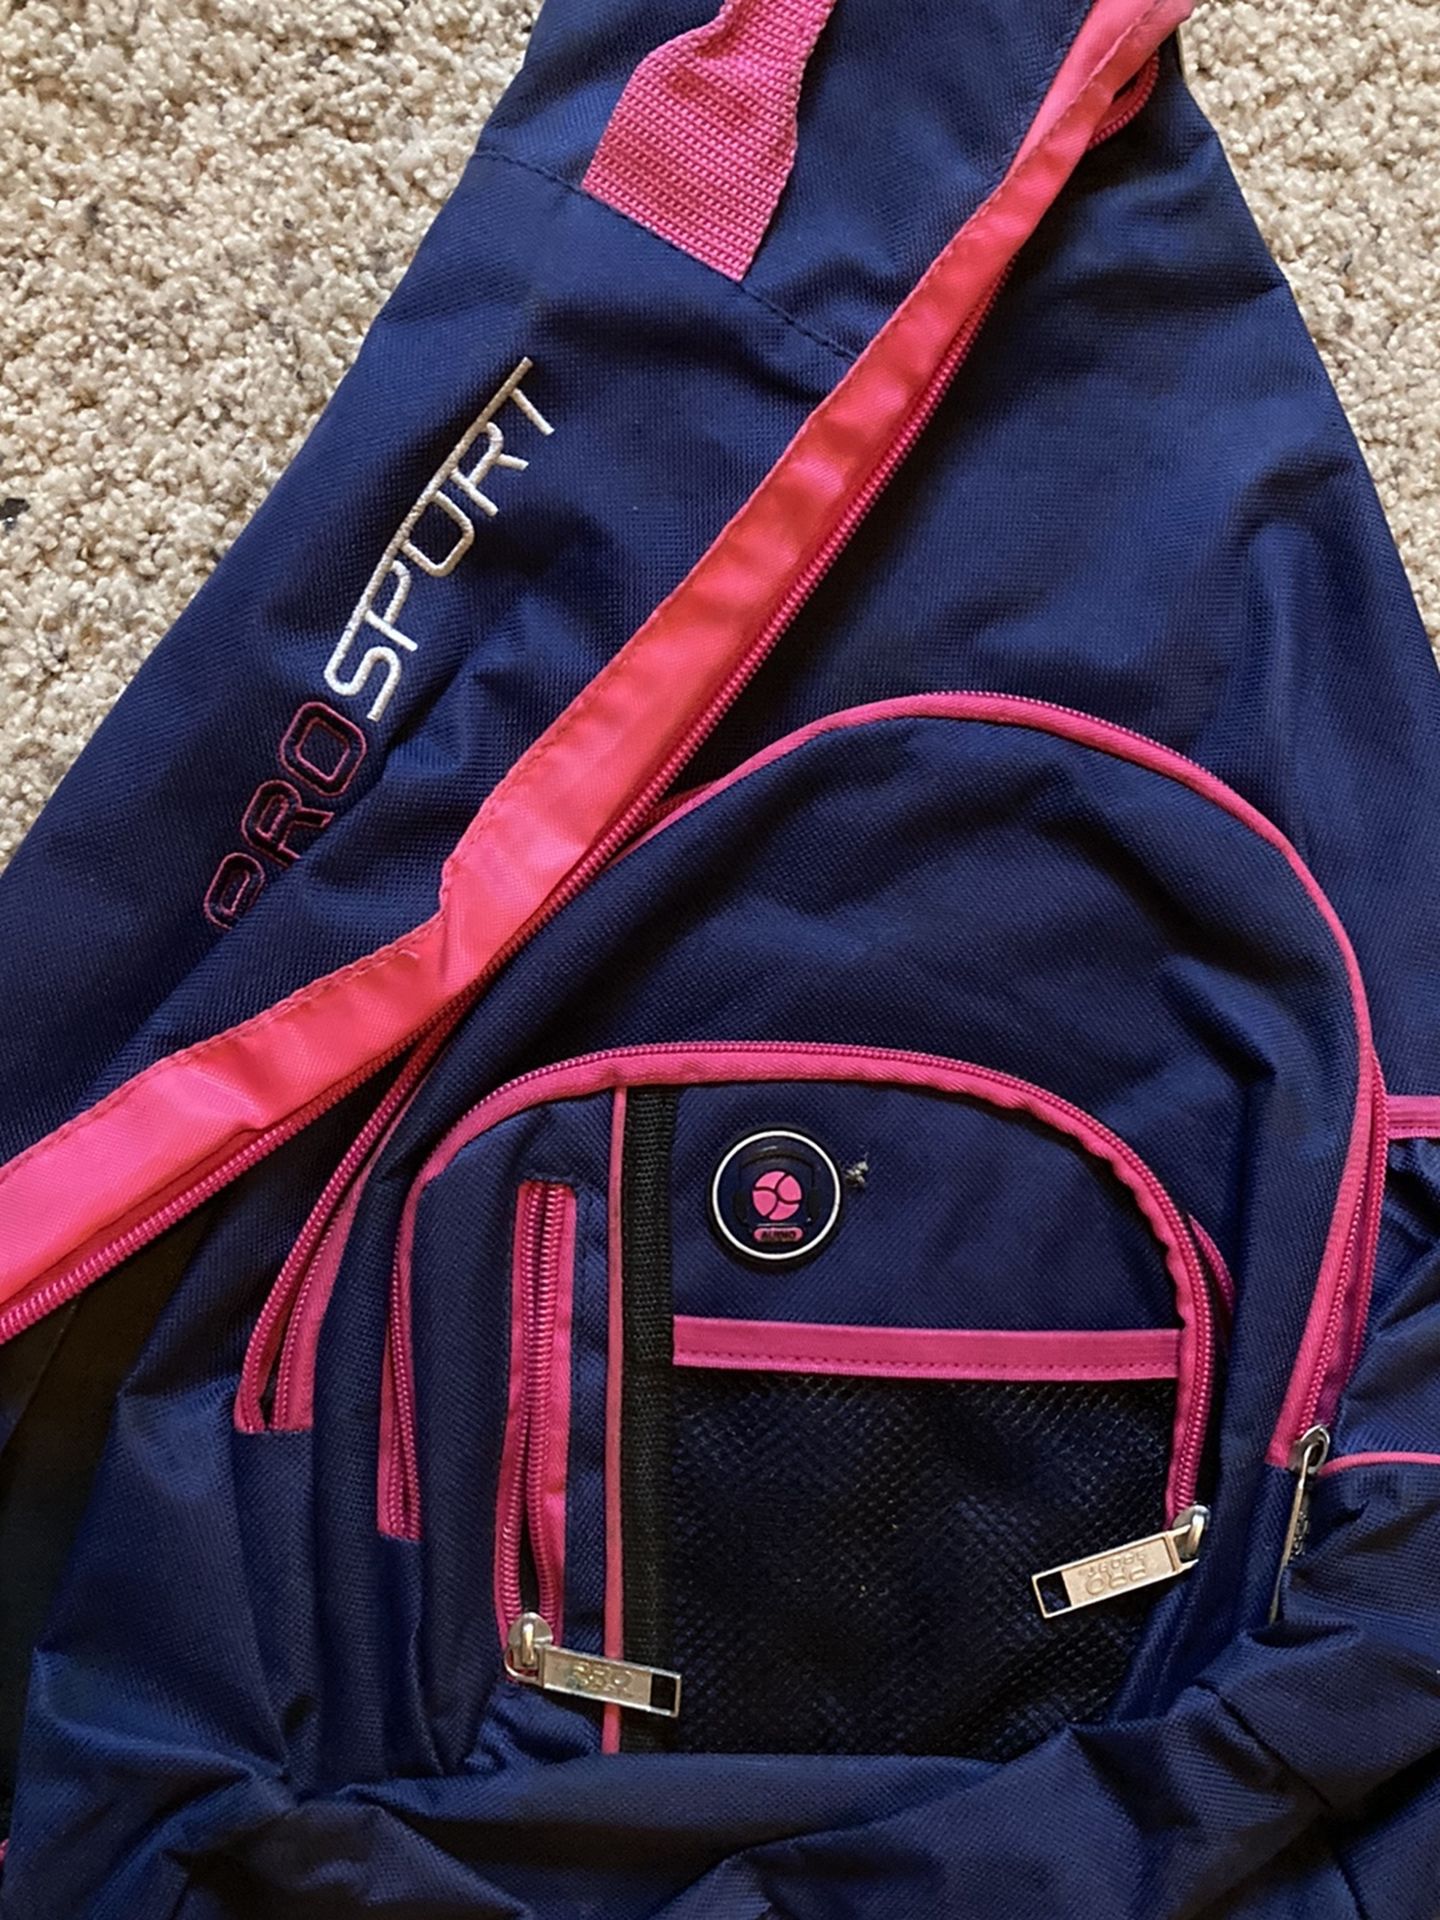 Pro Sport Backpack